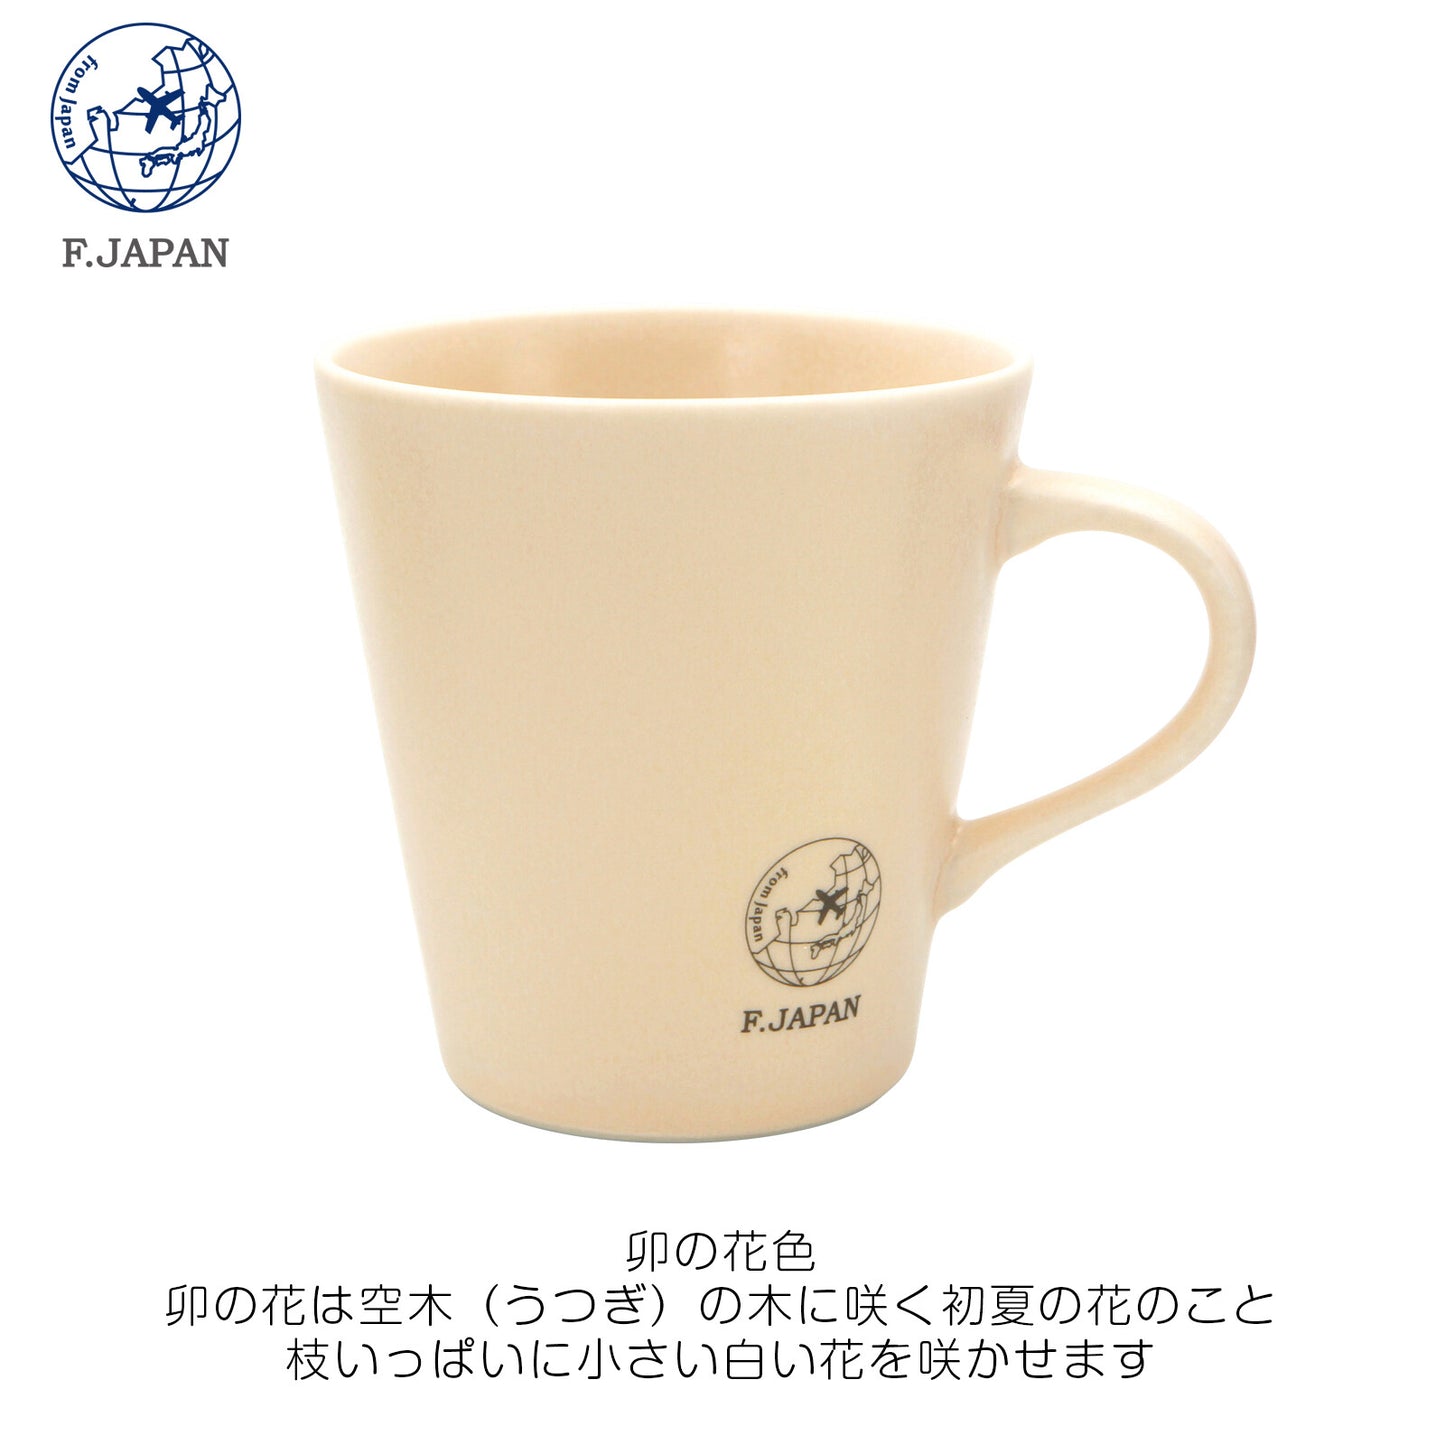 F.JAPAN Mino Ware and Color Mug